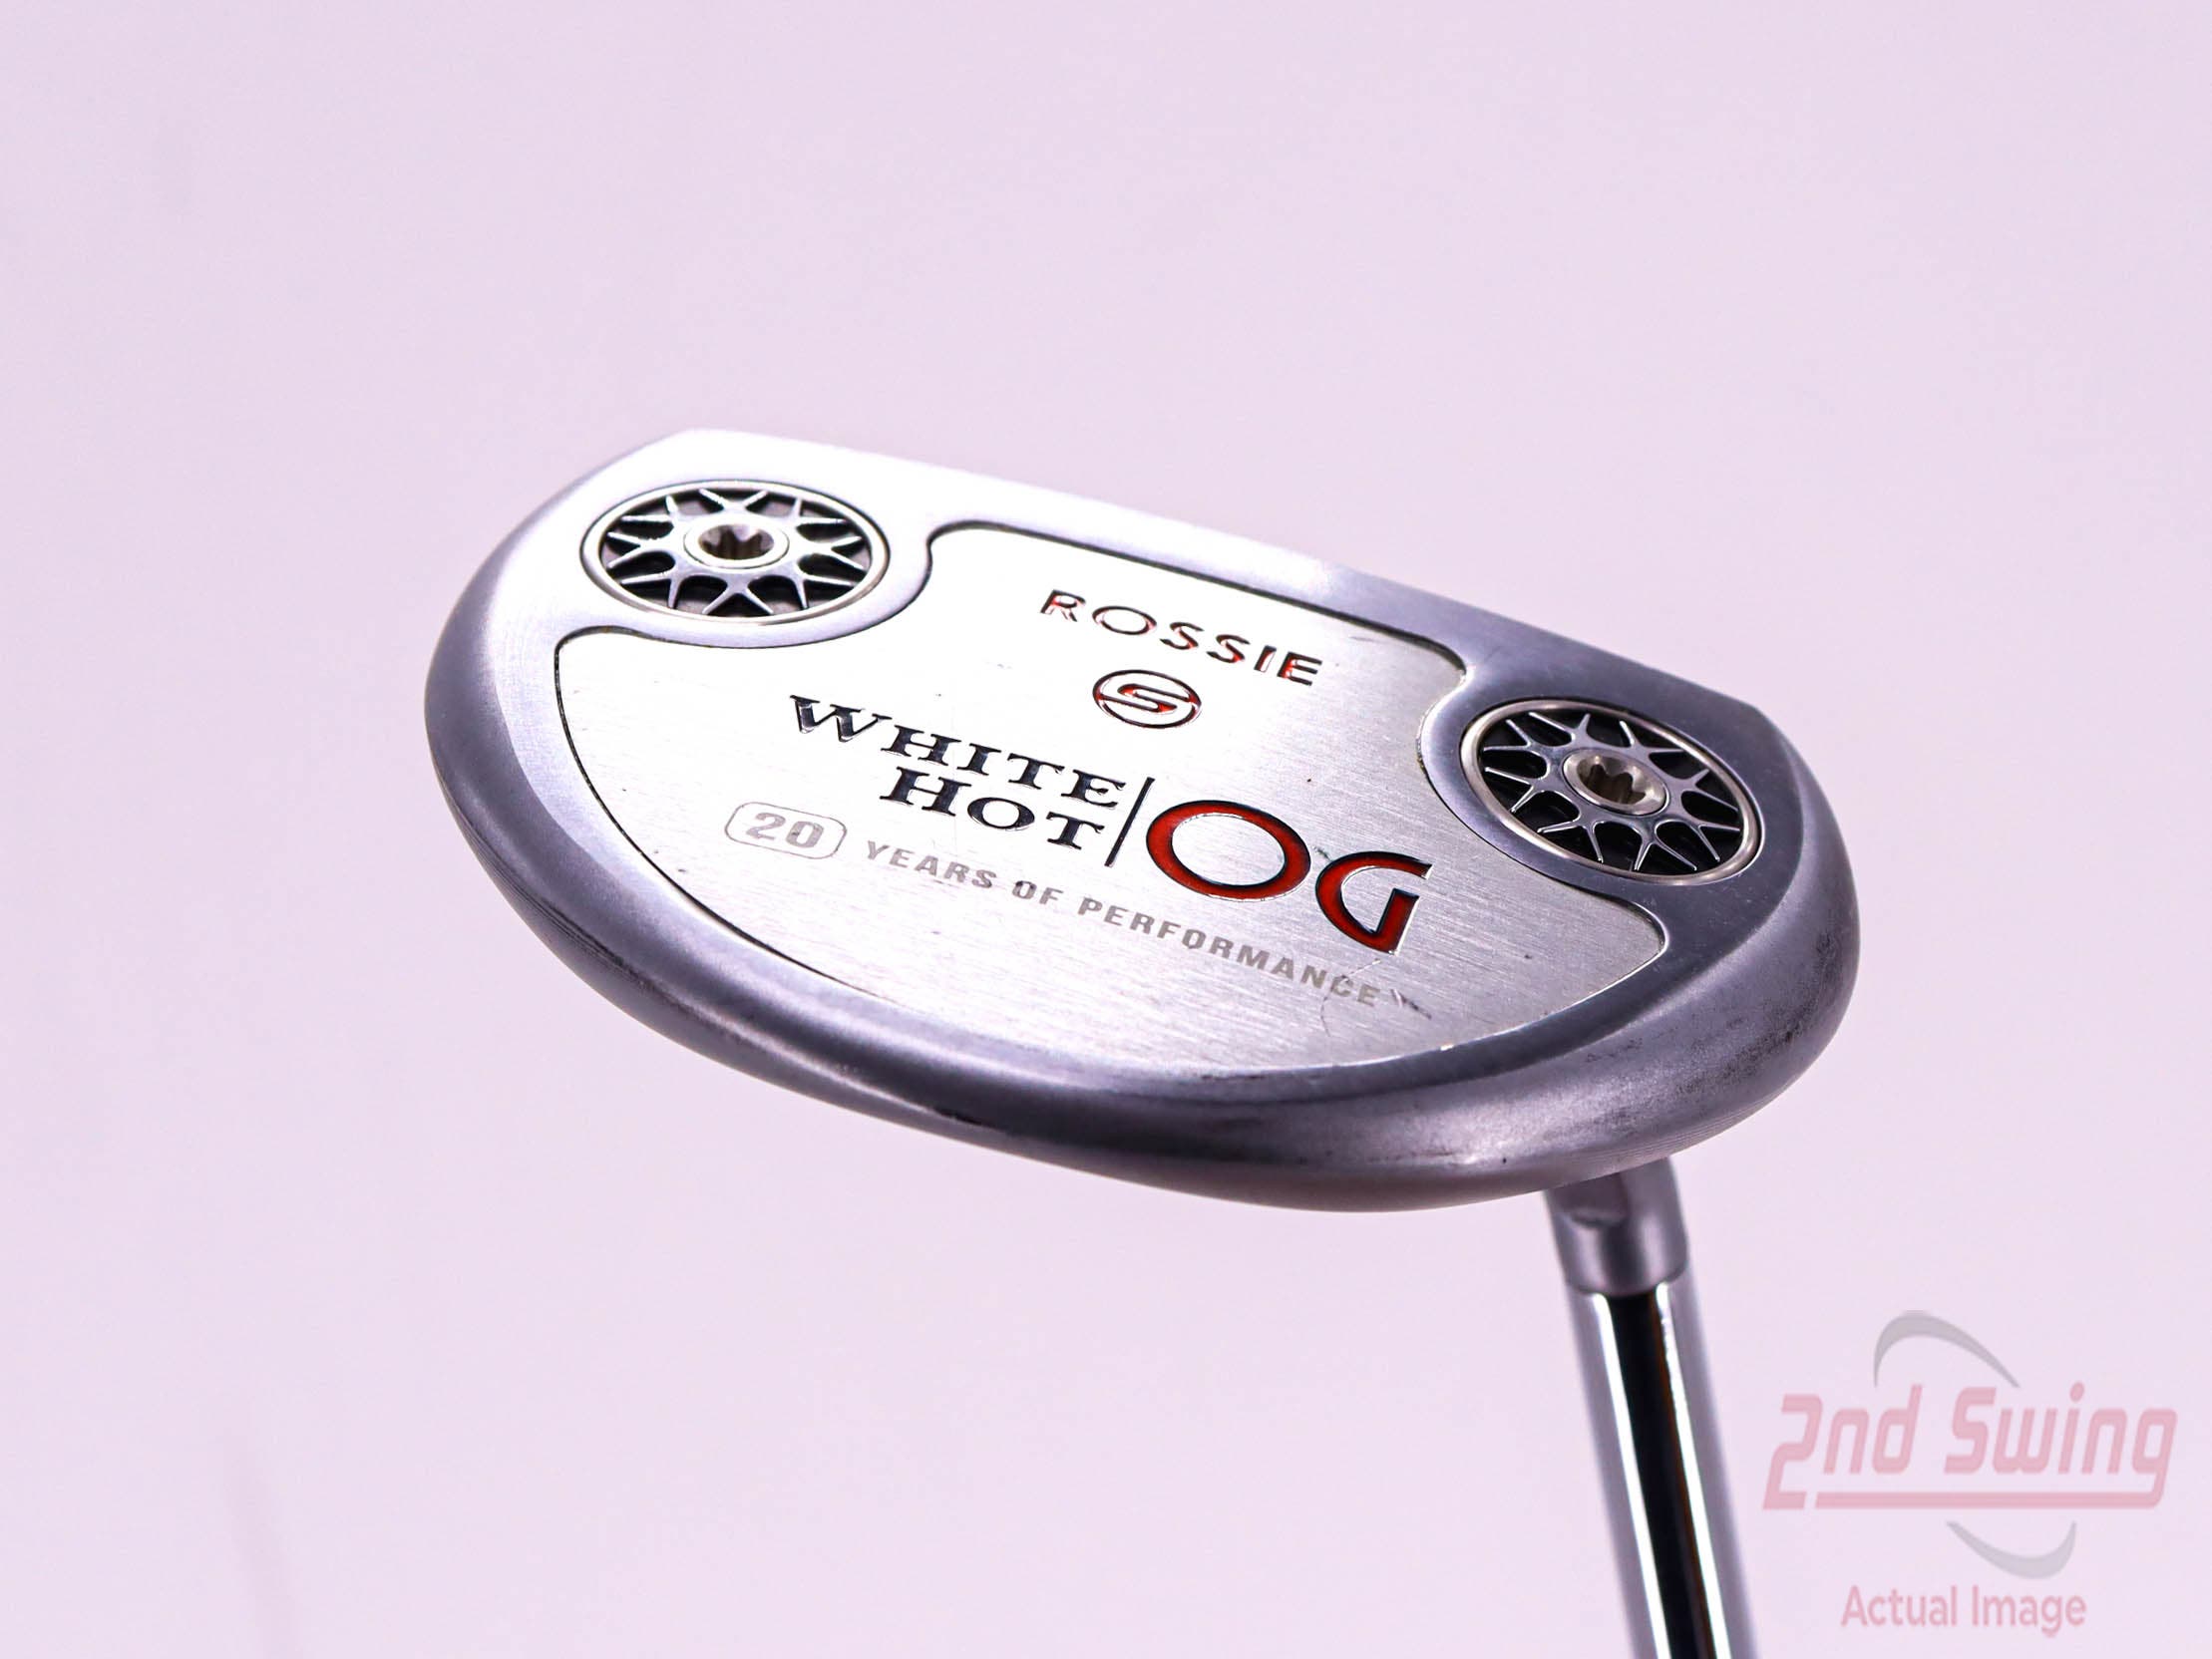 Odyssey White Hot OG Rossie S Putter (D-52331054647) 2nd Swing Golf